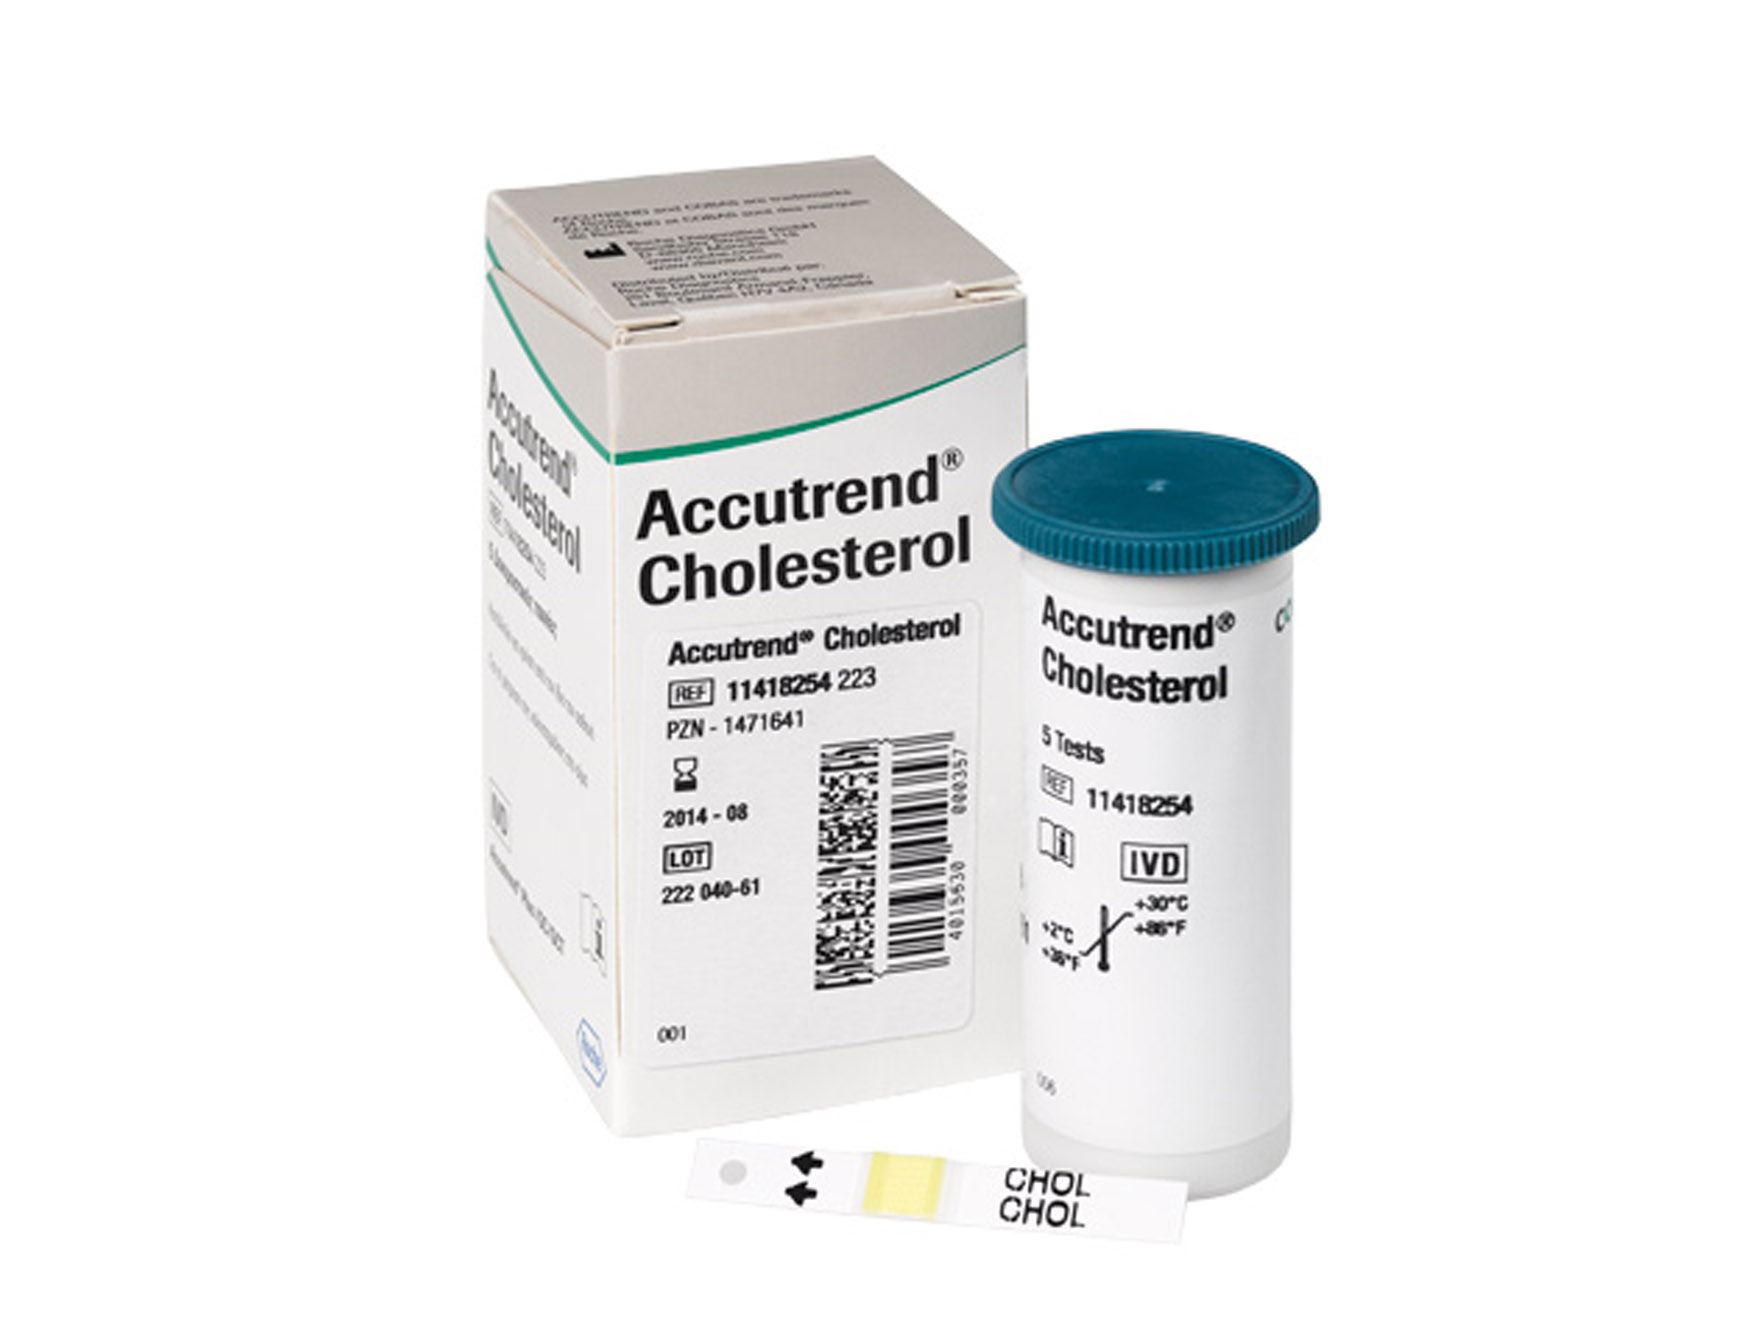 Accutrend Cholesterol - bandelettes réactives - 1 x 25 pcs